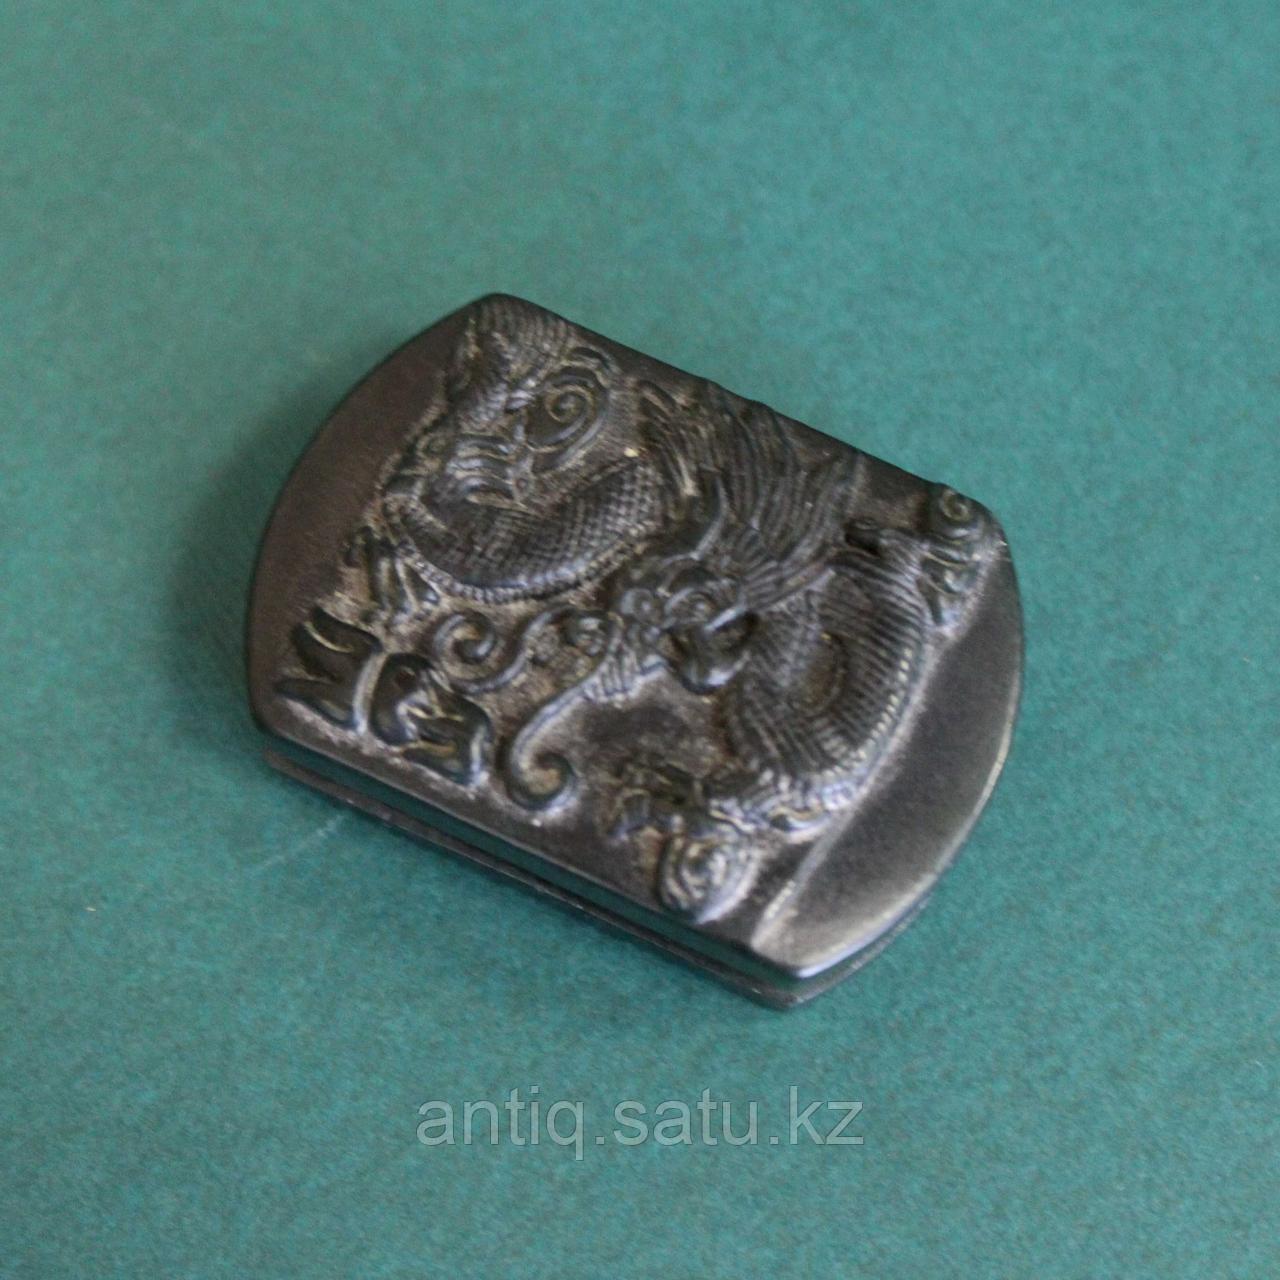 Нефрит - национальный камень Китая, который всегда ценился дороже серебра и золота.